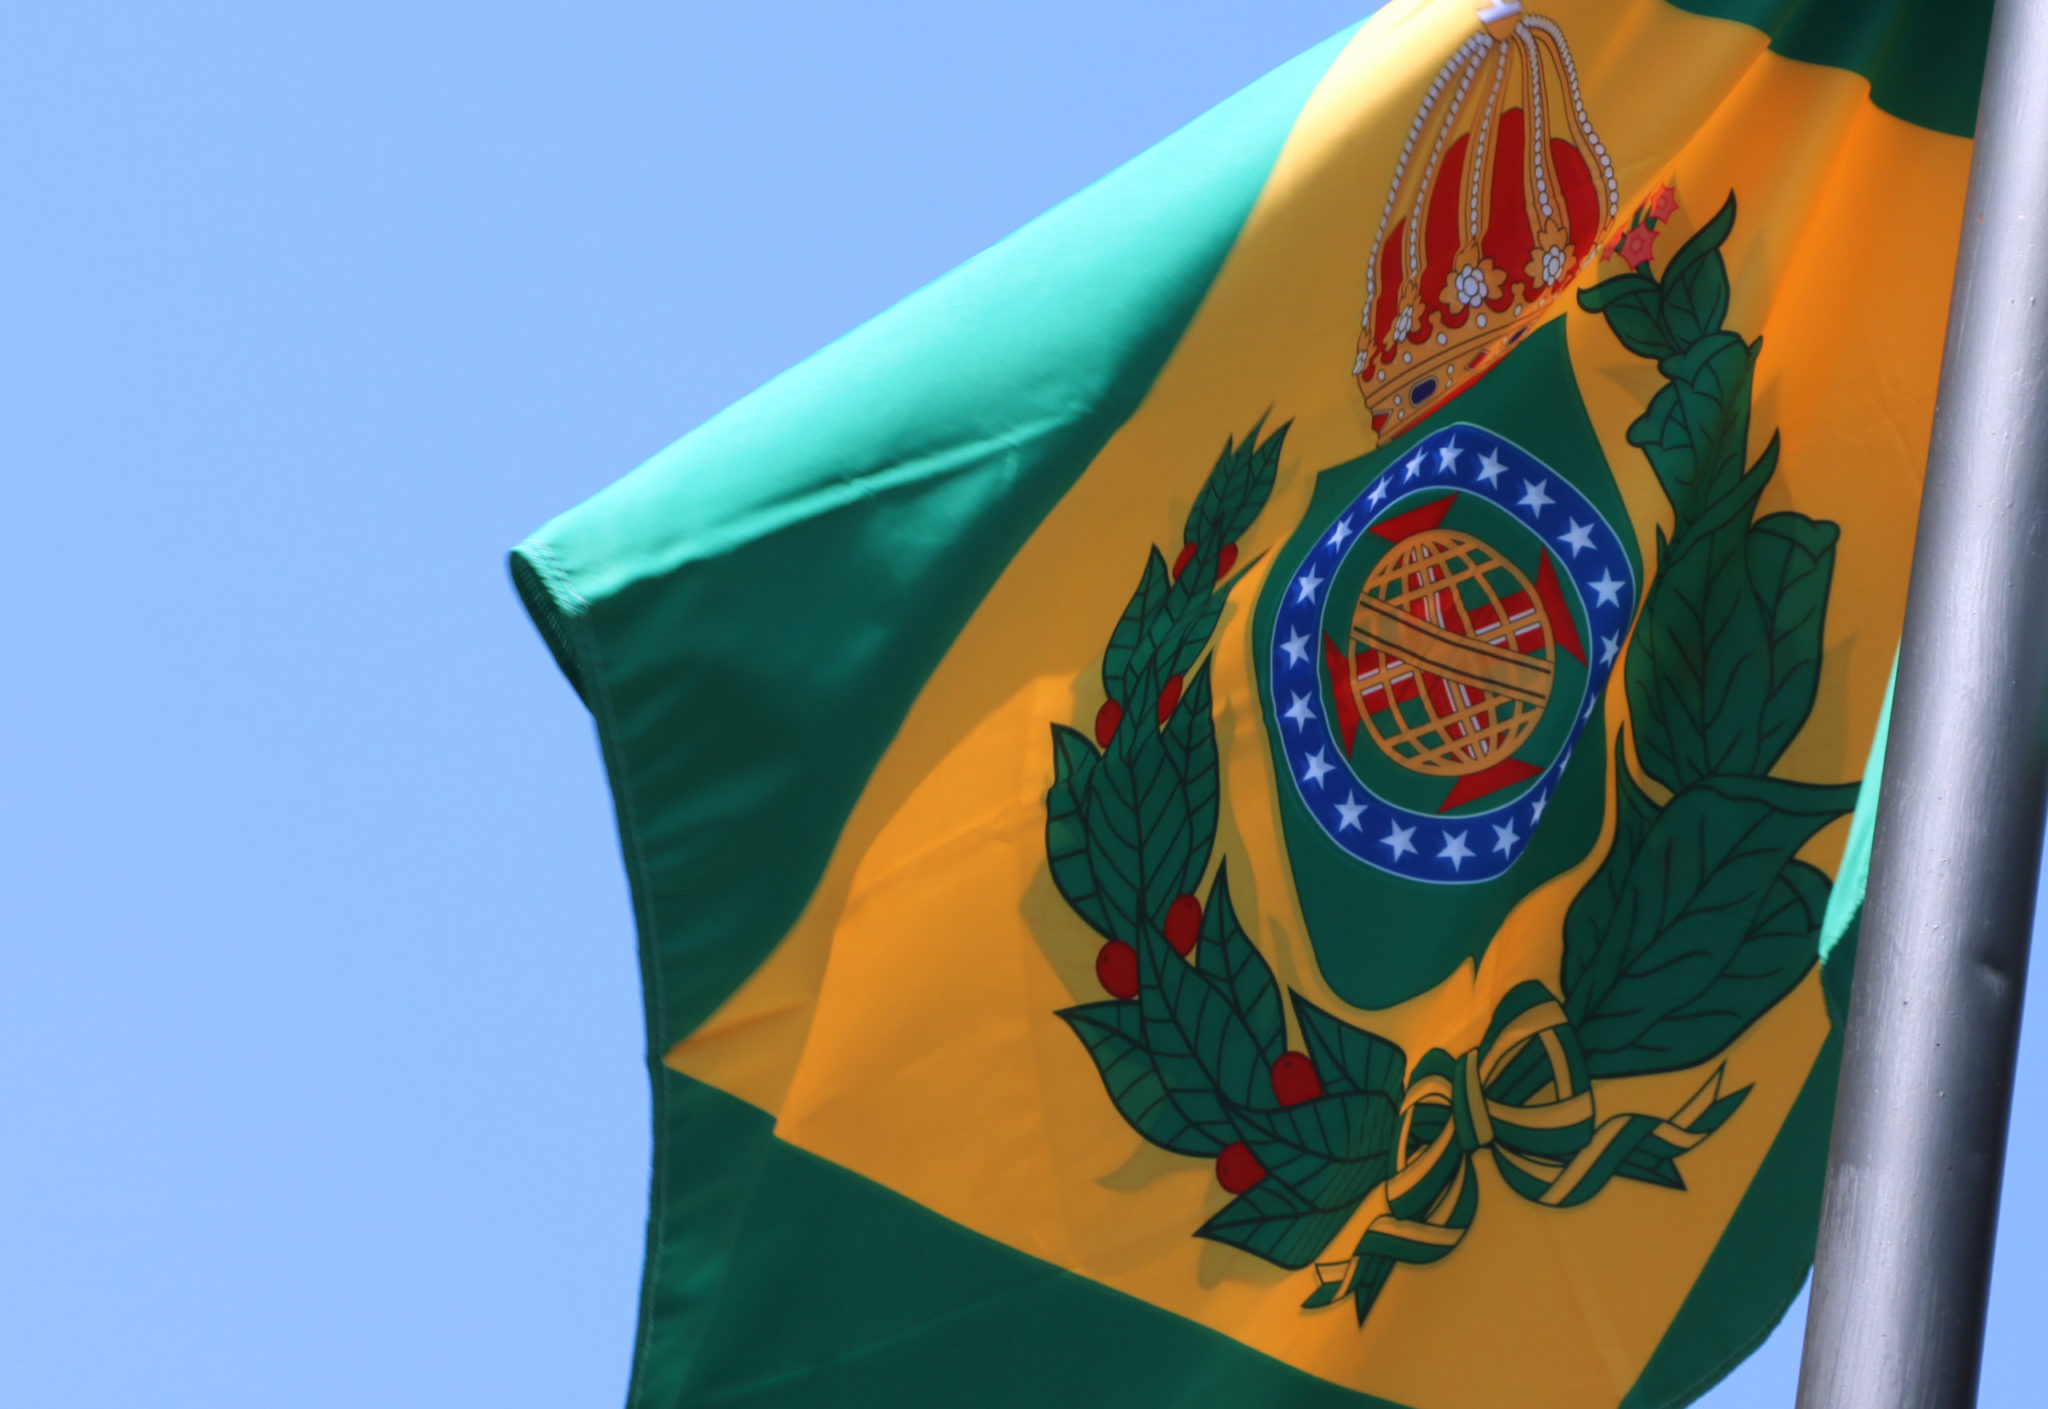 Ao dar início às comemorações do bicentenário da Independência, TJMS hasteia, durante a Semana da Pátria, a bandeira do Brasil Império